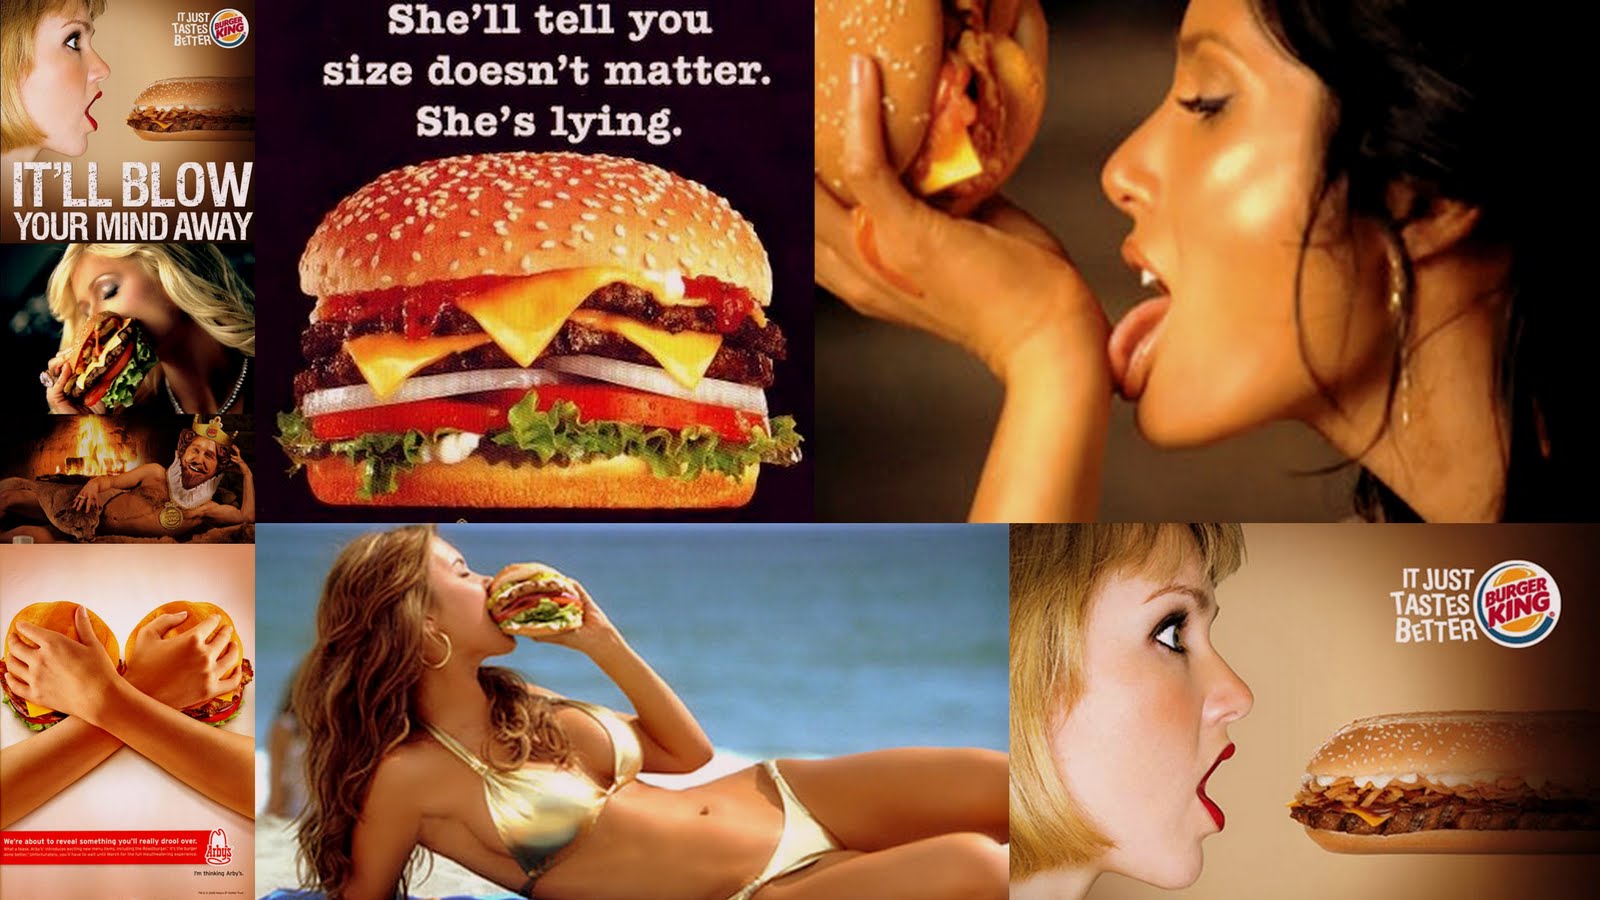 பர்கர் கிங் உணவகத்தின் பர்கர்களை சாப்பிட முன்பதிவு செய்து காத்திருக்கும் இந்தியர்கள் Burger-king-ads2